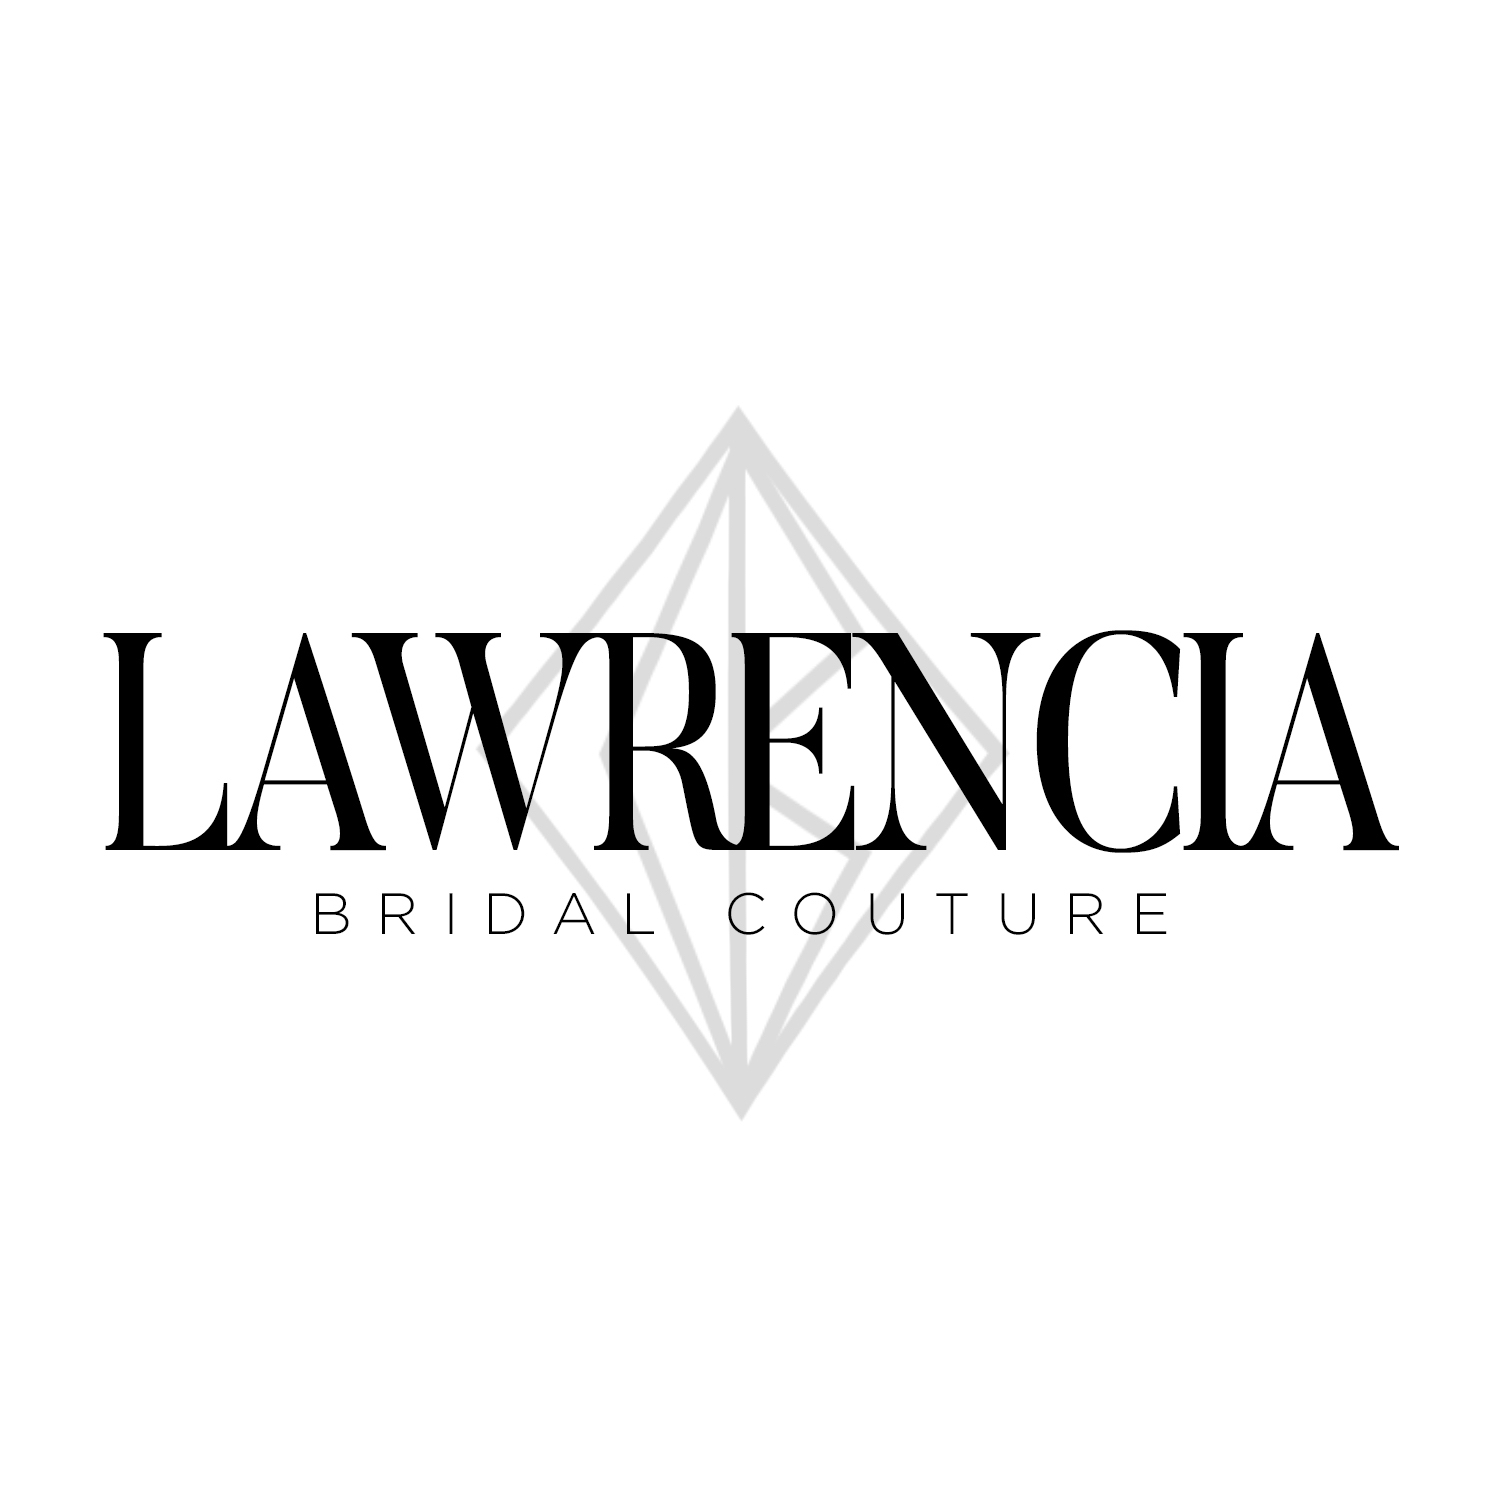 Lawrencia Bridal Couture